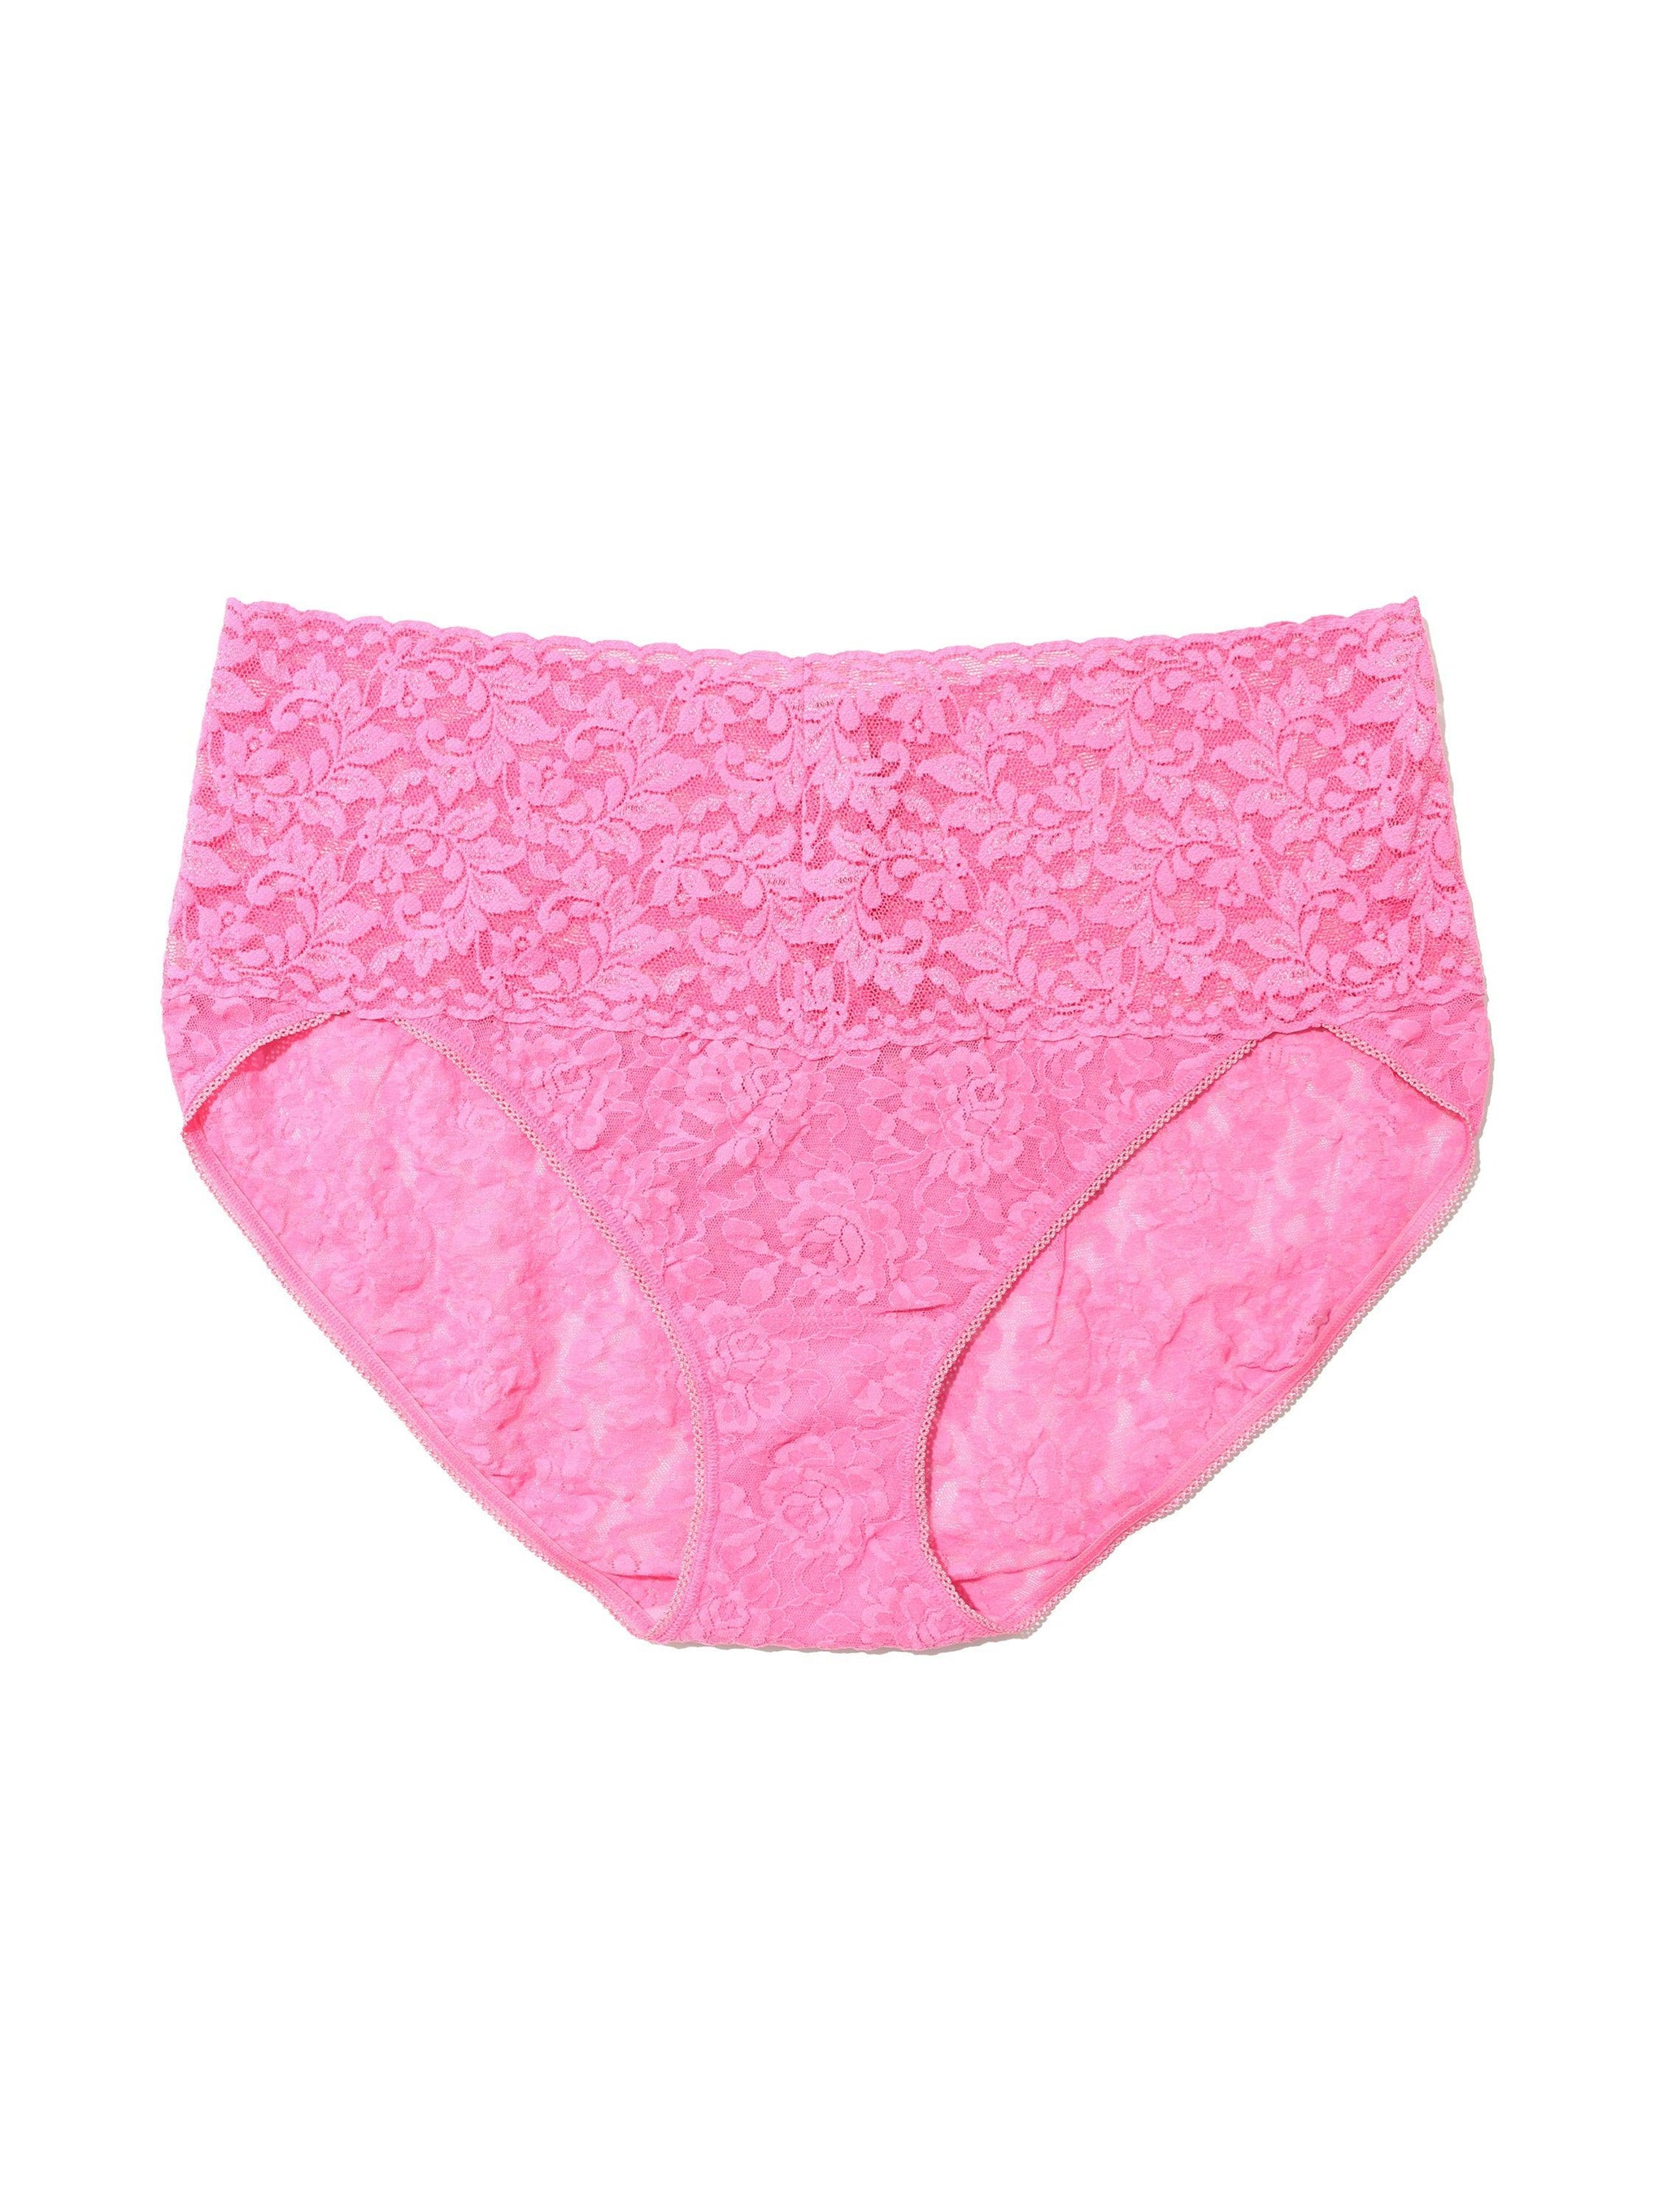 Plus Size Retro Lace V-Kini Taffy Pink